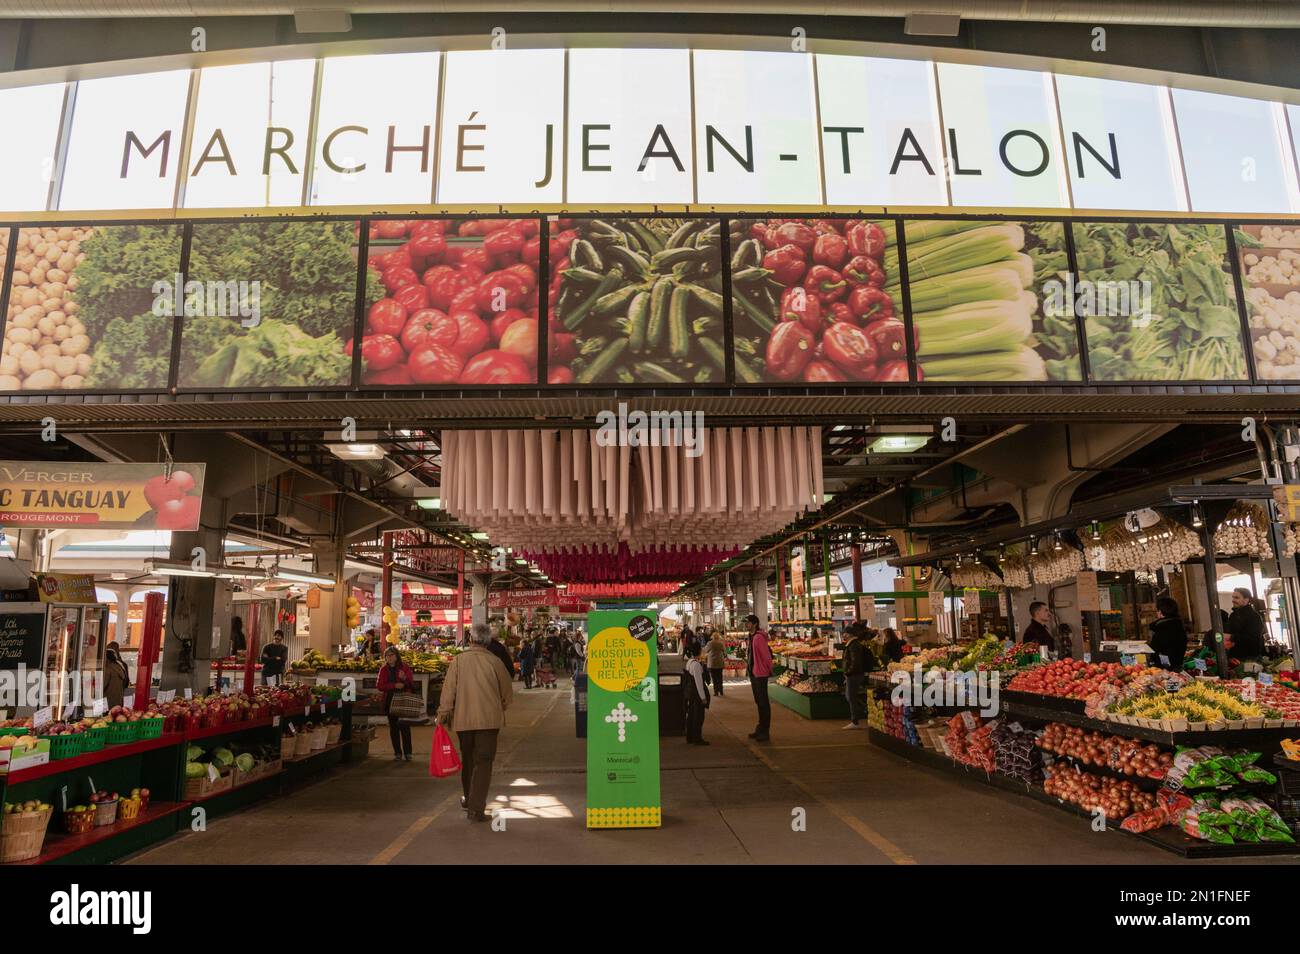 Regional produce on display in Jean Talon Market (Marche Jean-Talon), Montreal, Quebec, Canada, North America Stock Photo